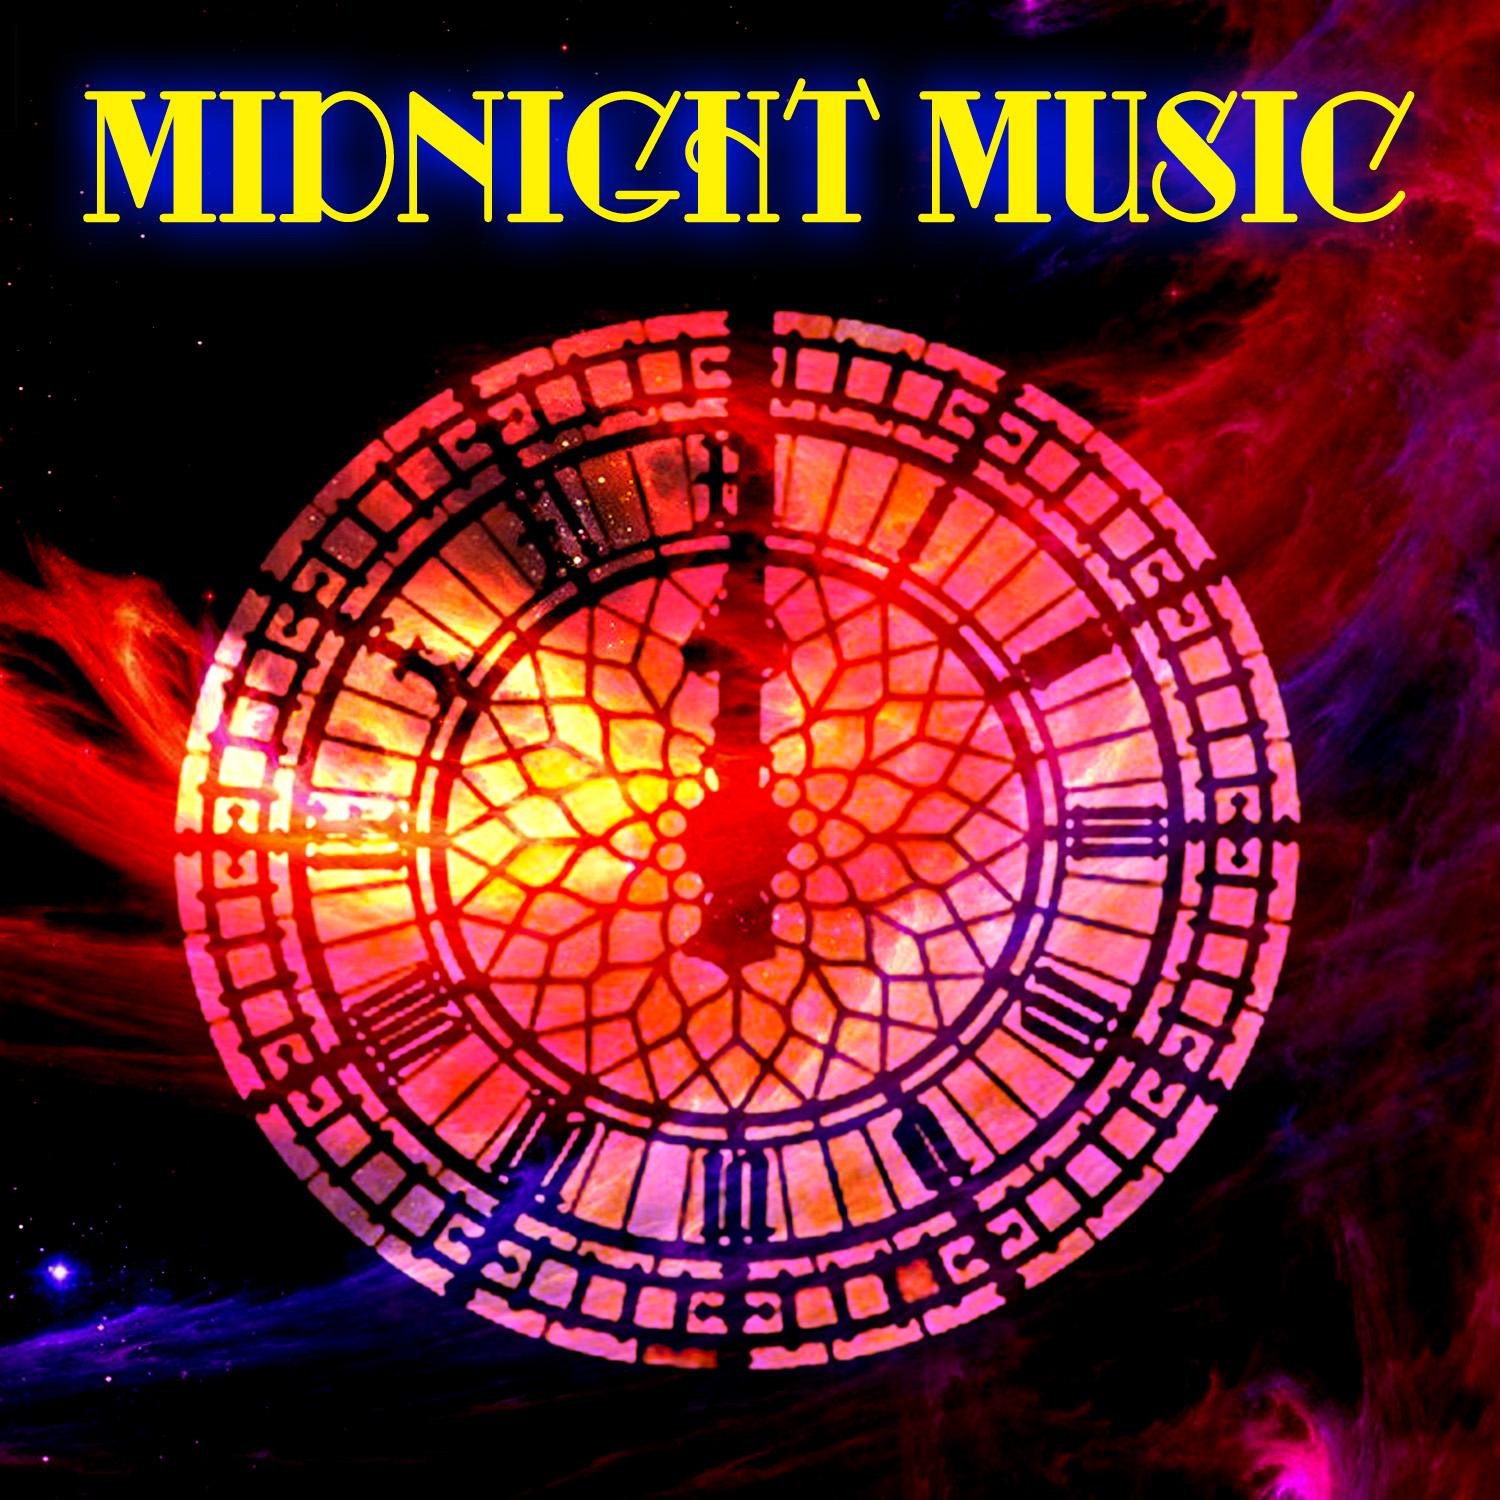 Midnight Music